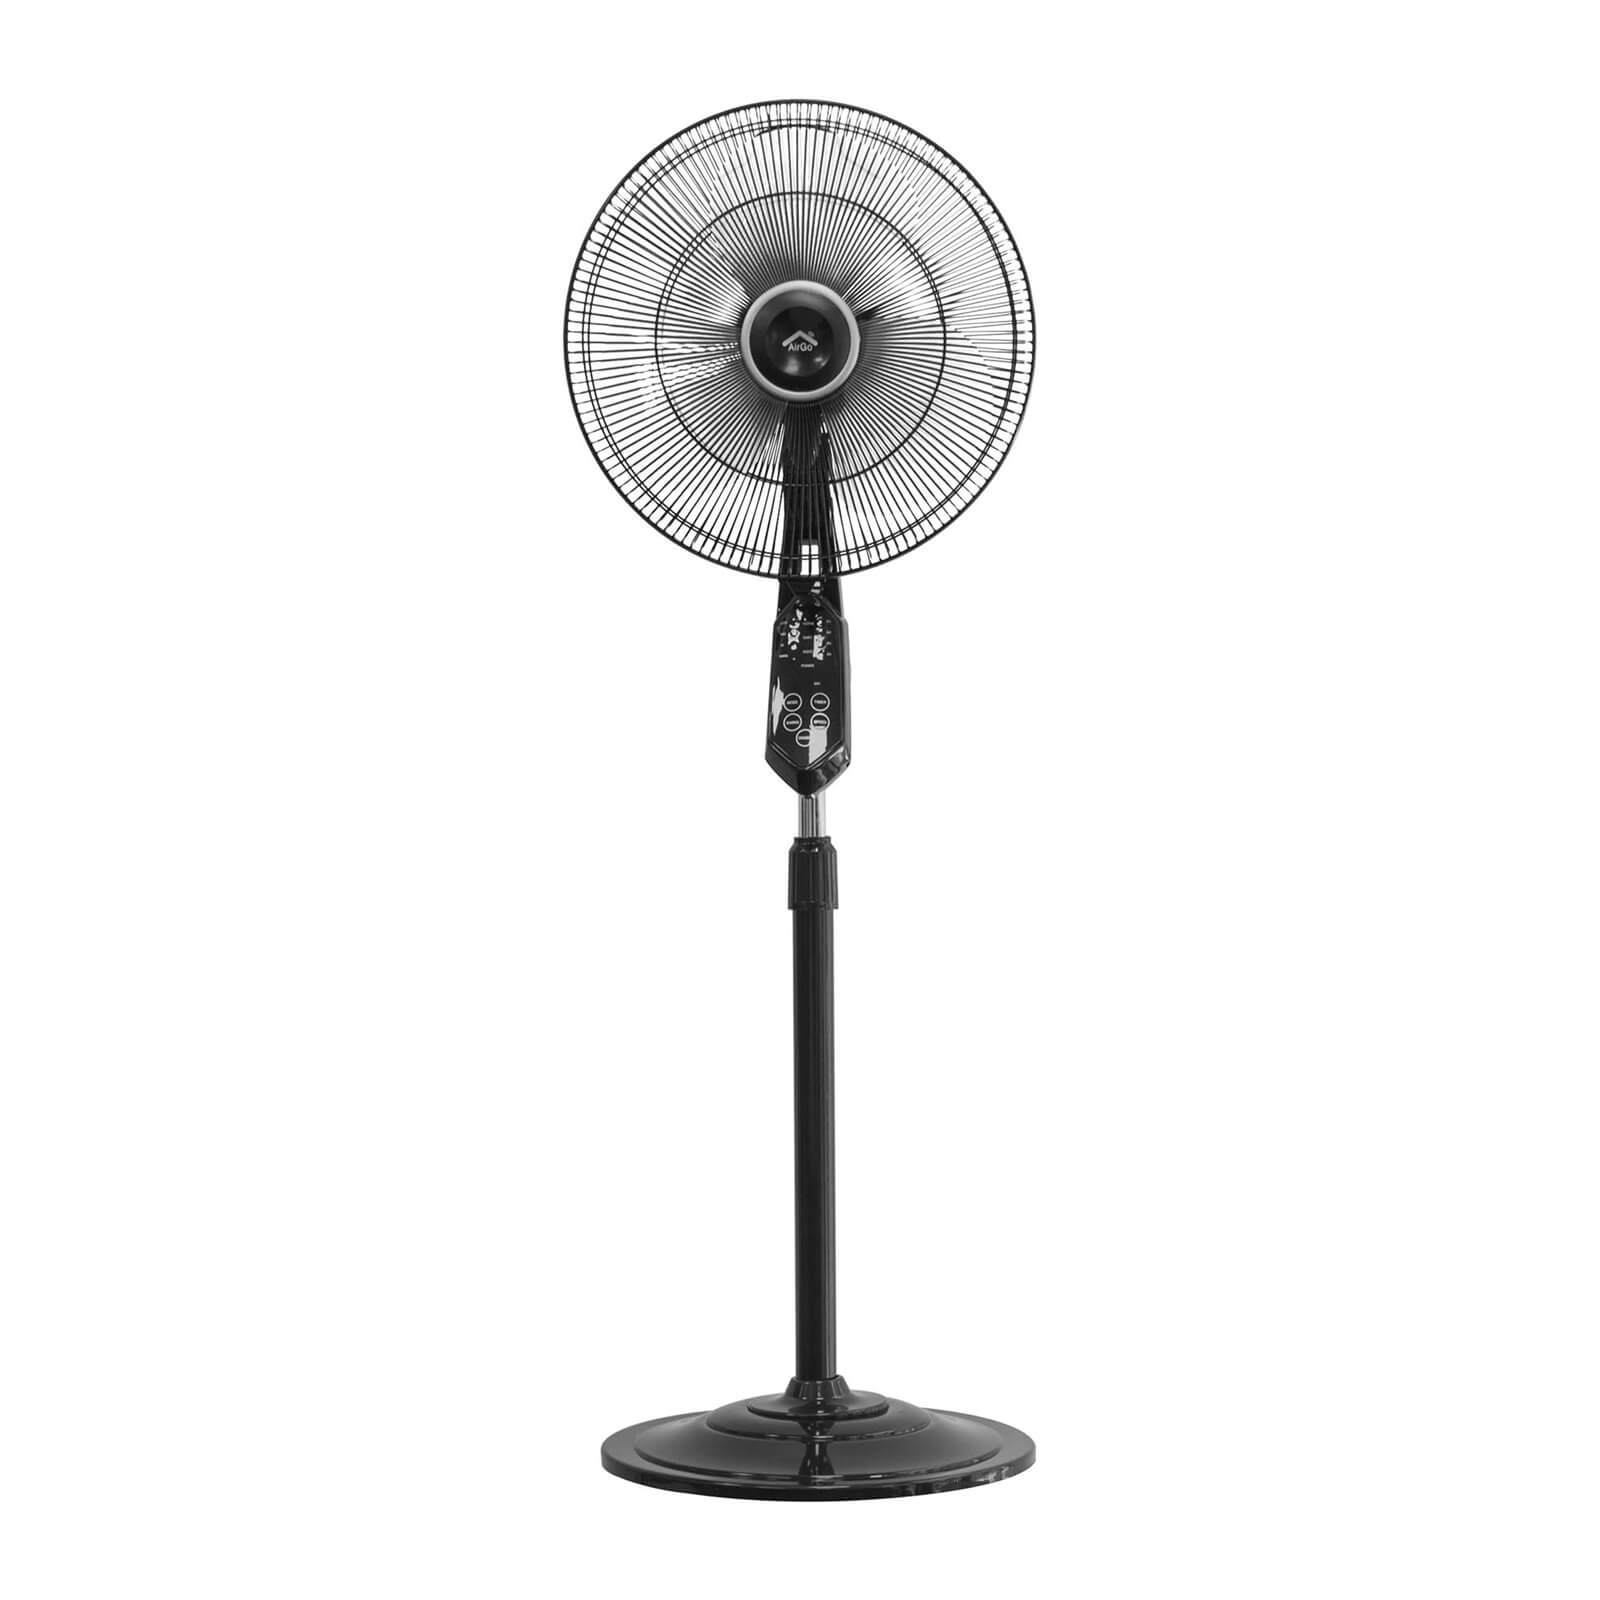 AirGo Smart Pedestal Fan